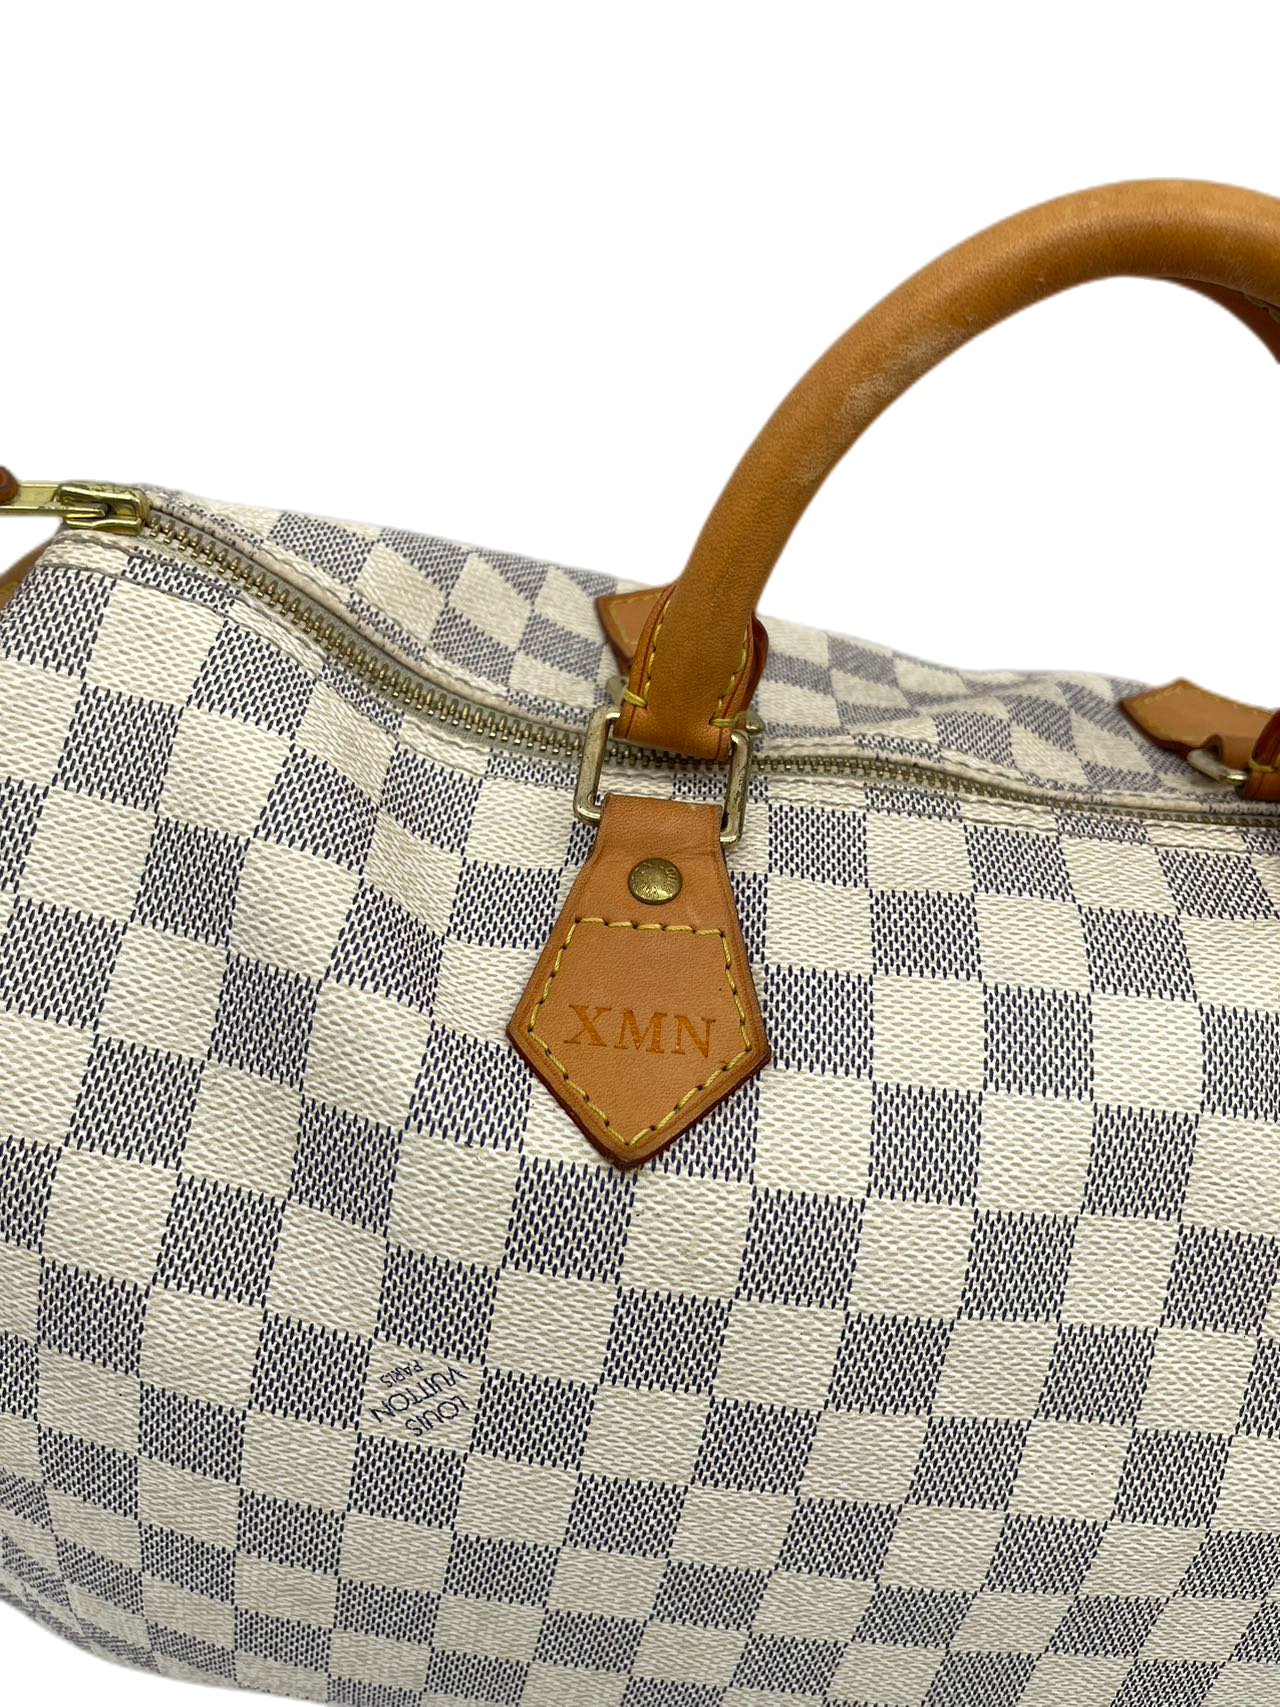 Preloved Louis Vuitton Damier Azur Speedy 35 Satchel Handbag